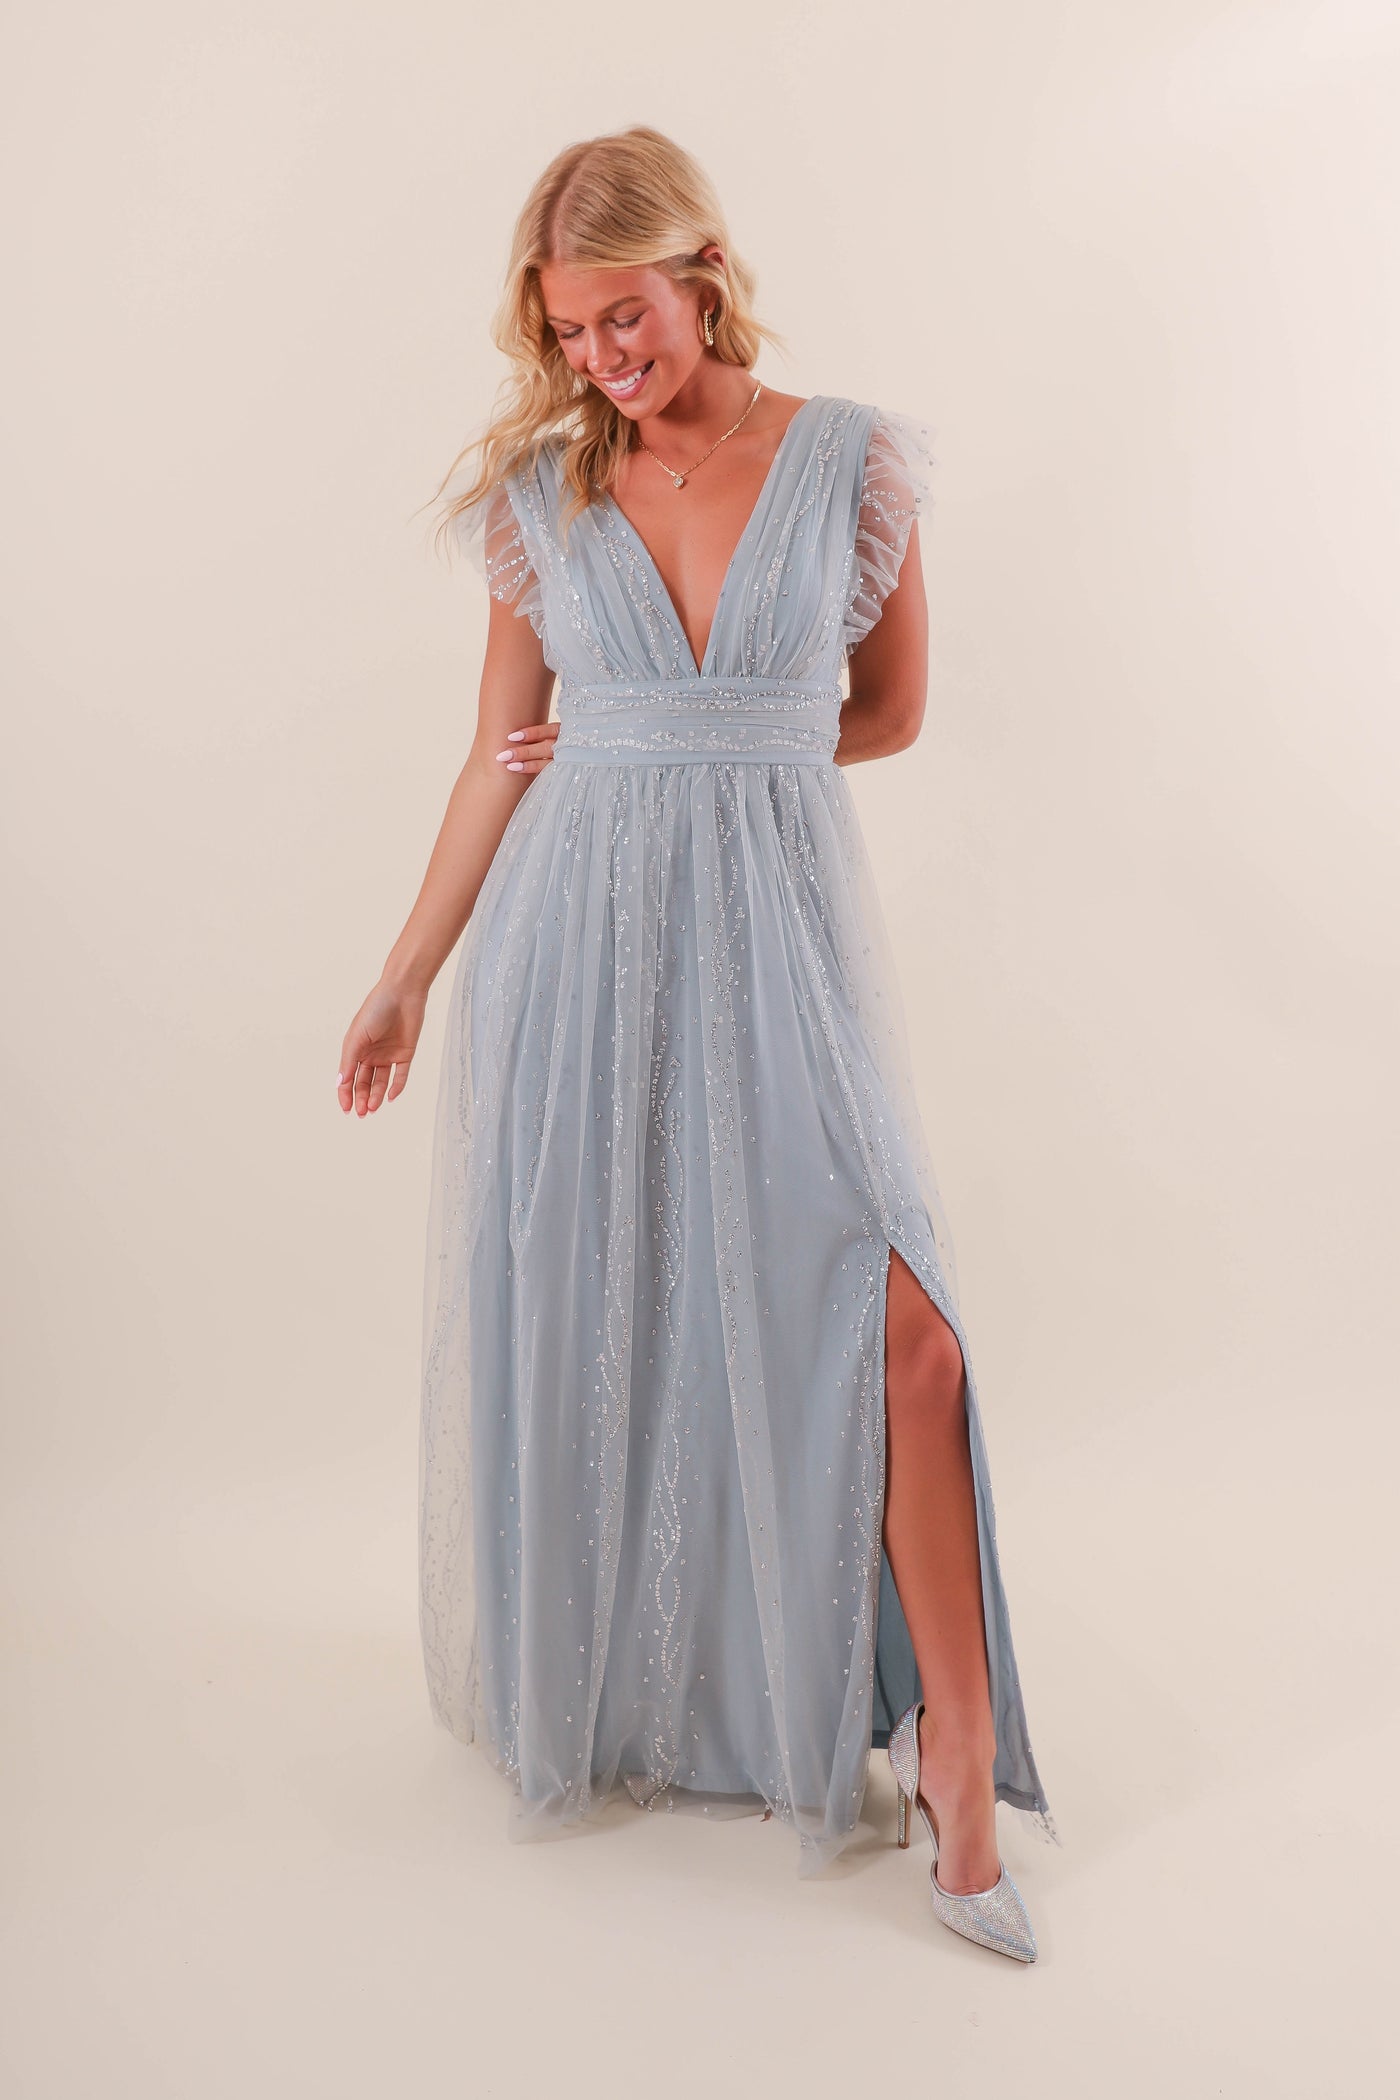 Women's Blue Tulle Maxi Dress- Women's Glitter Tulle Dress- Soieblu Tulle Maxi Dress